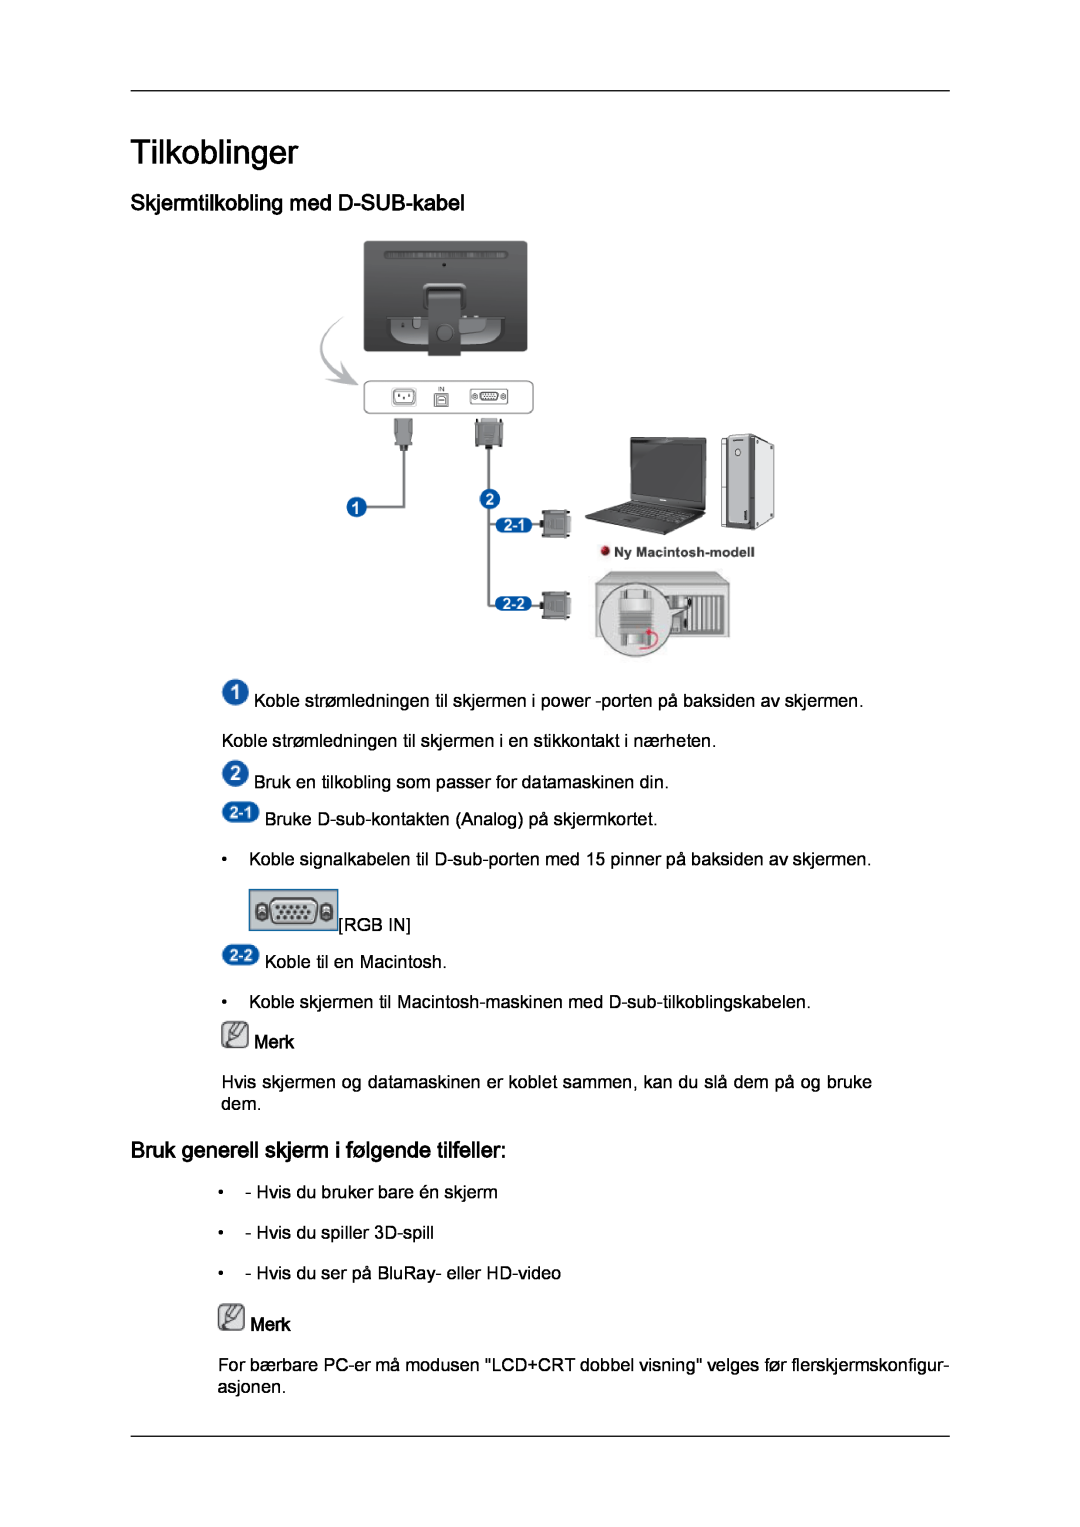 Samsung LS22LFUGF/EN manual Tilkoblinger, Skjermtilkobling med D-SUB-kabel, Bruk generell skjerm i følgende tilfeller 